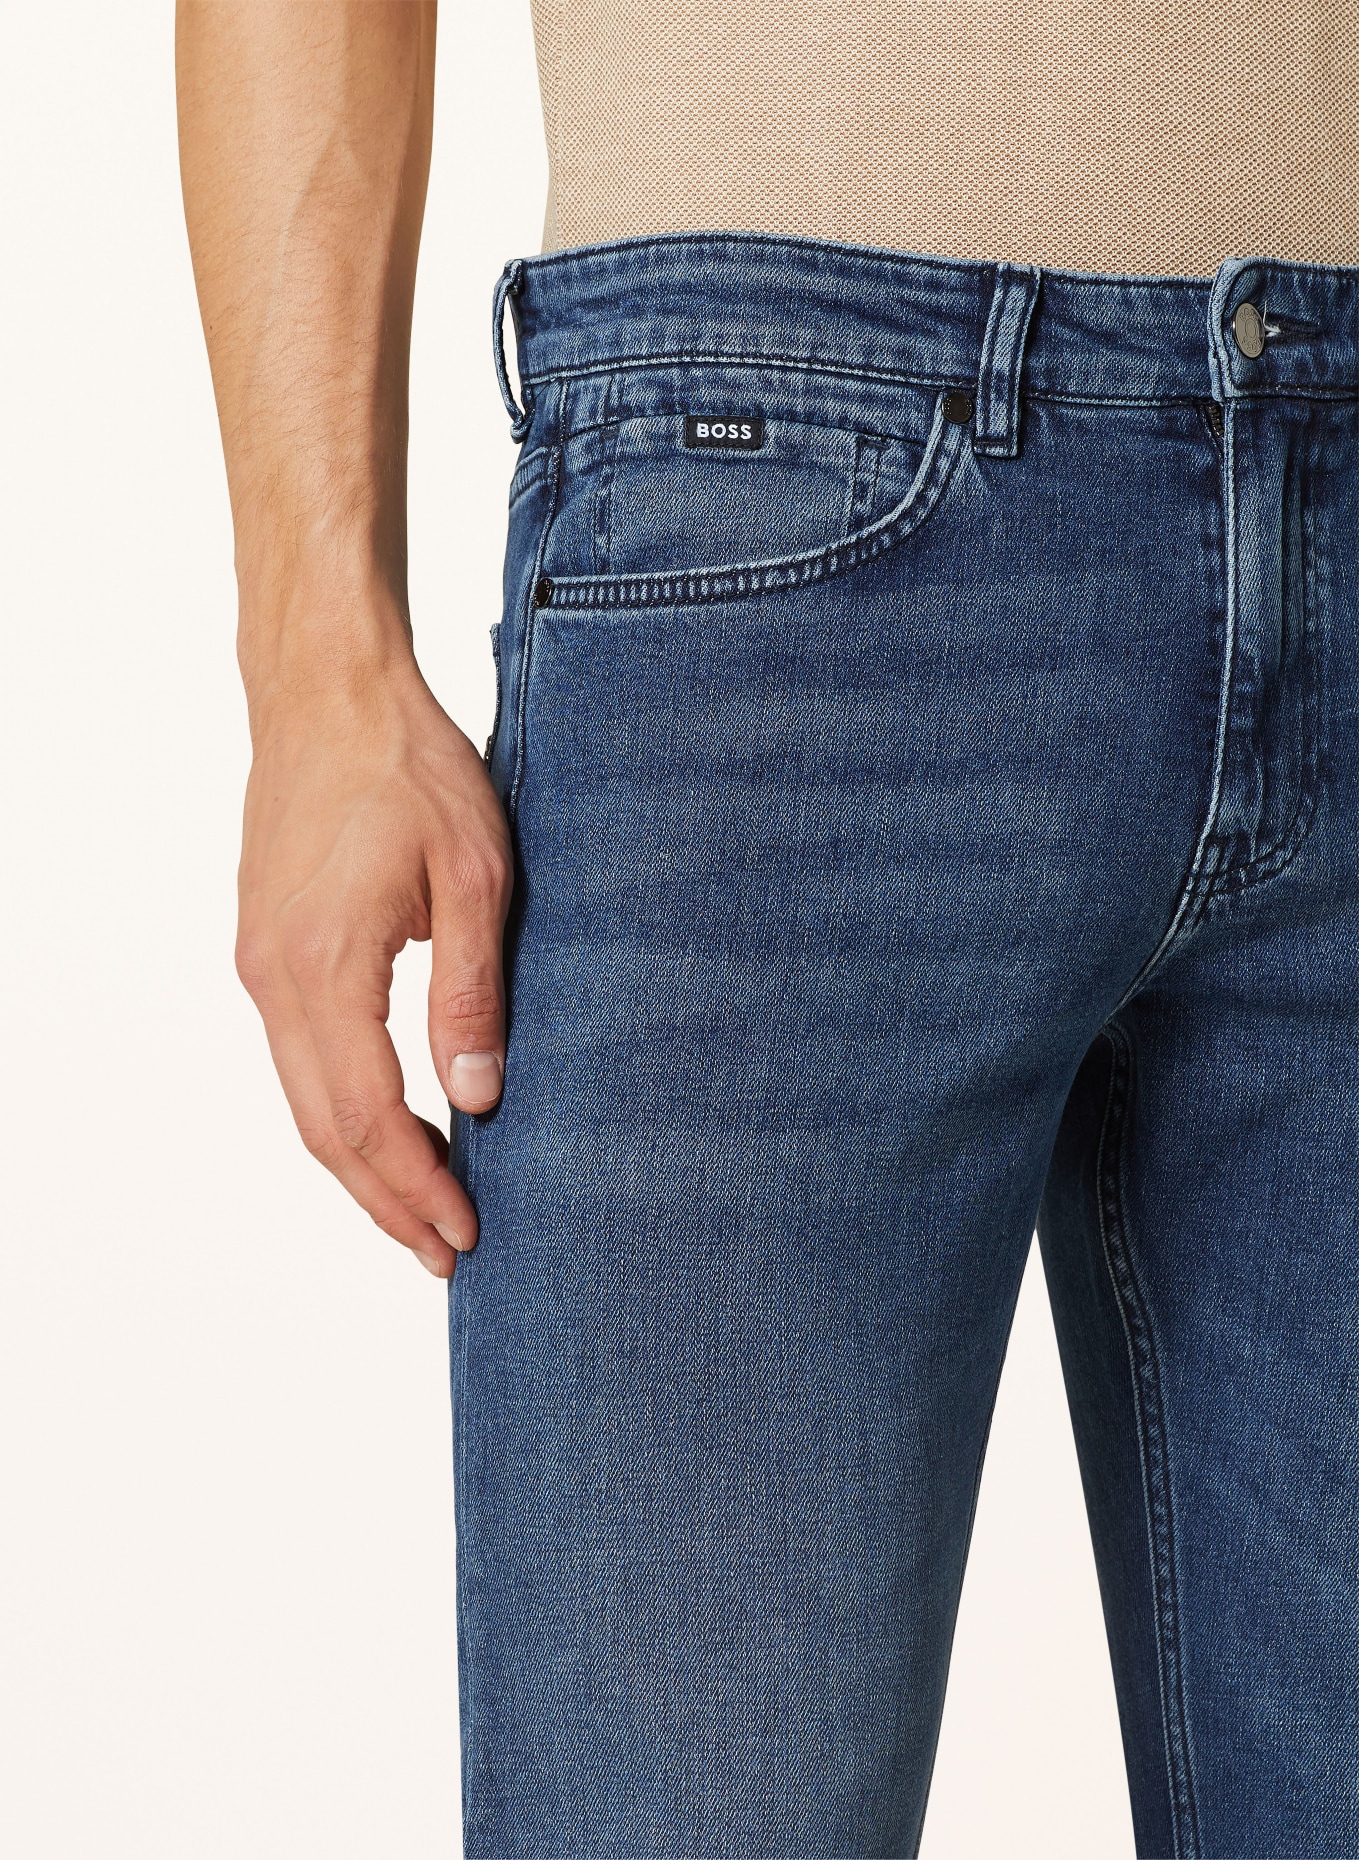 BOSS Jeans DELAWARE Slim Fit, Farbe: 416 NAVY (Bild 5)